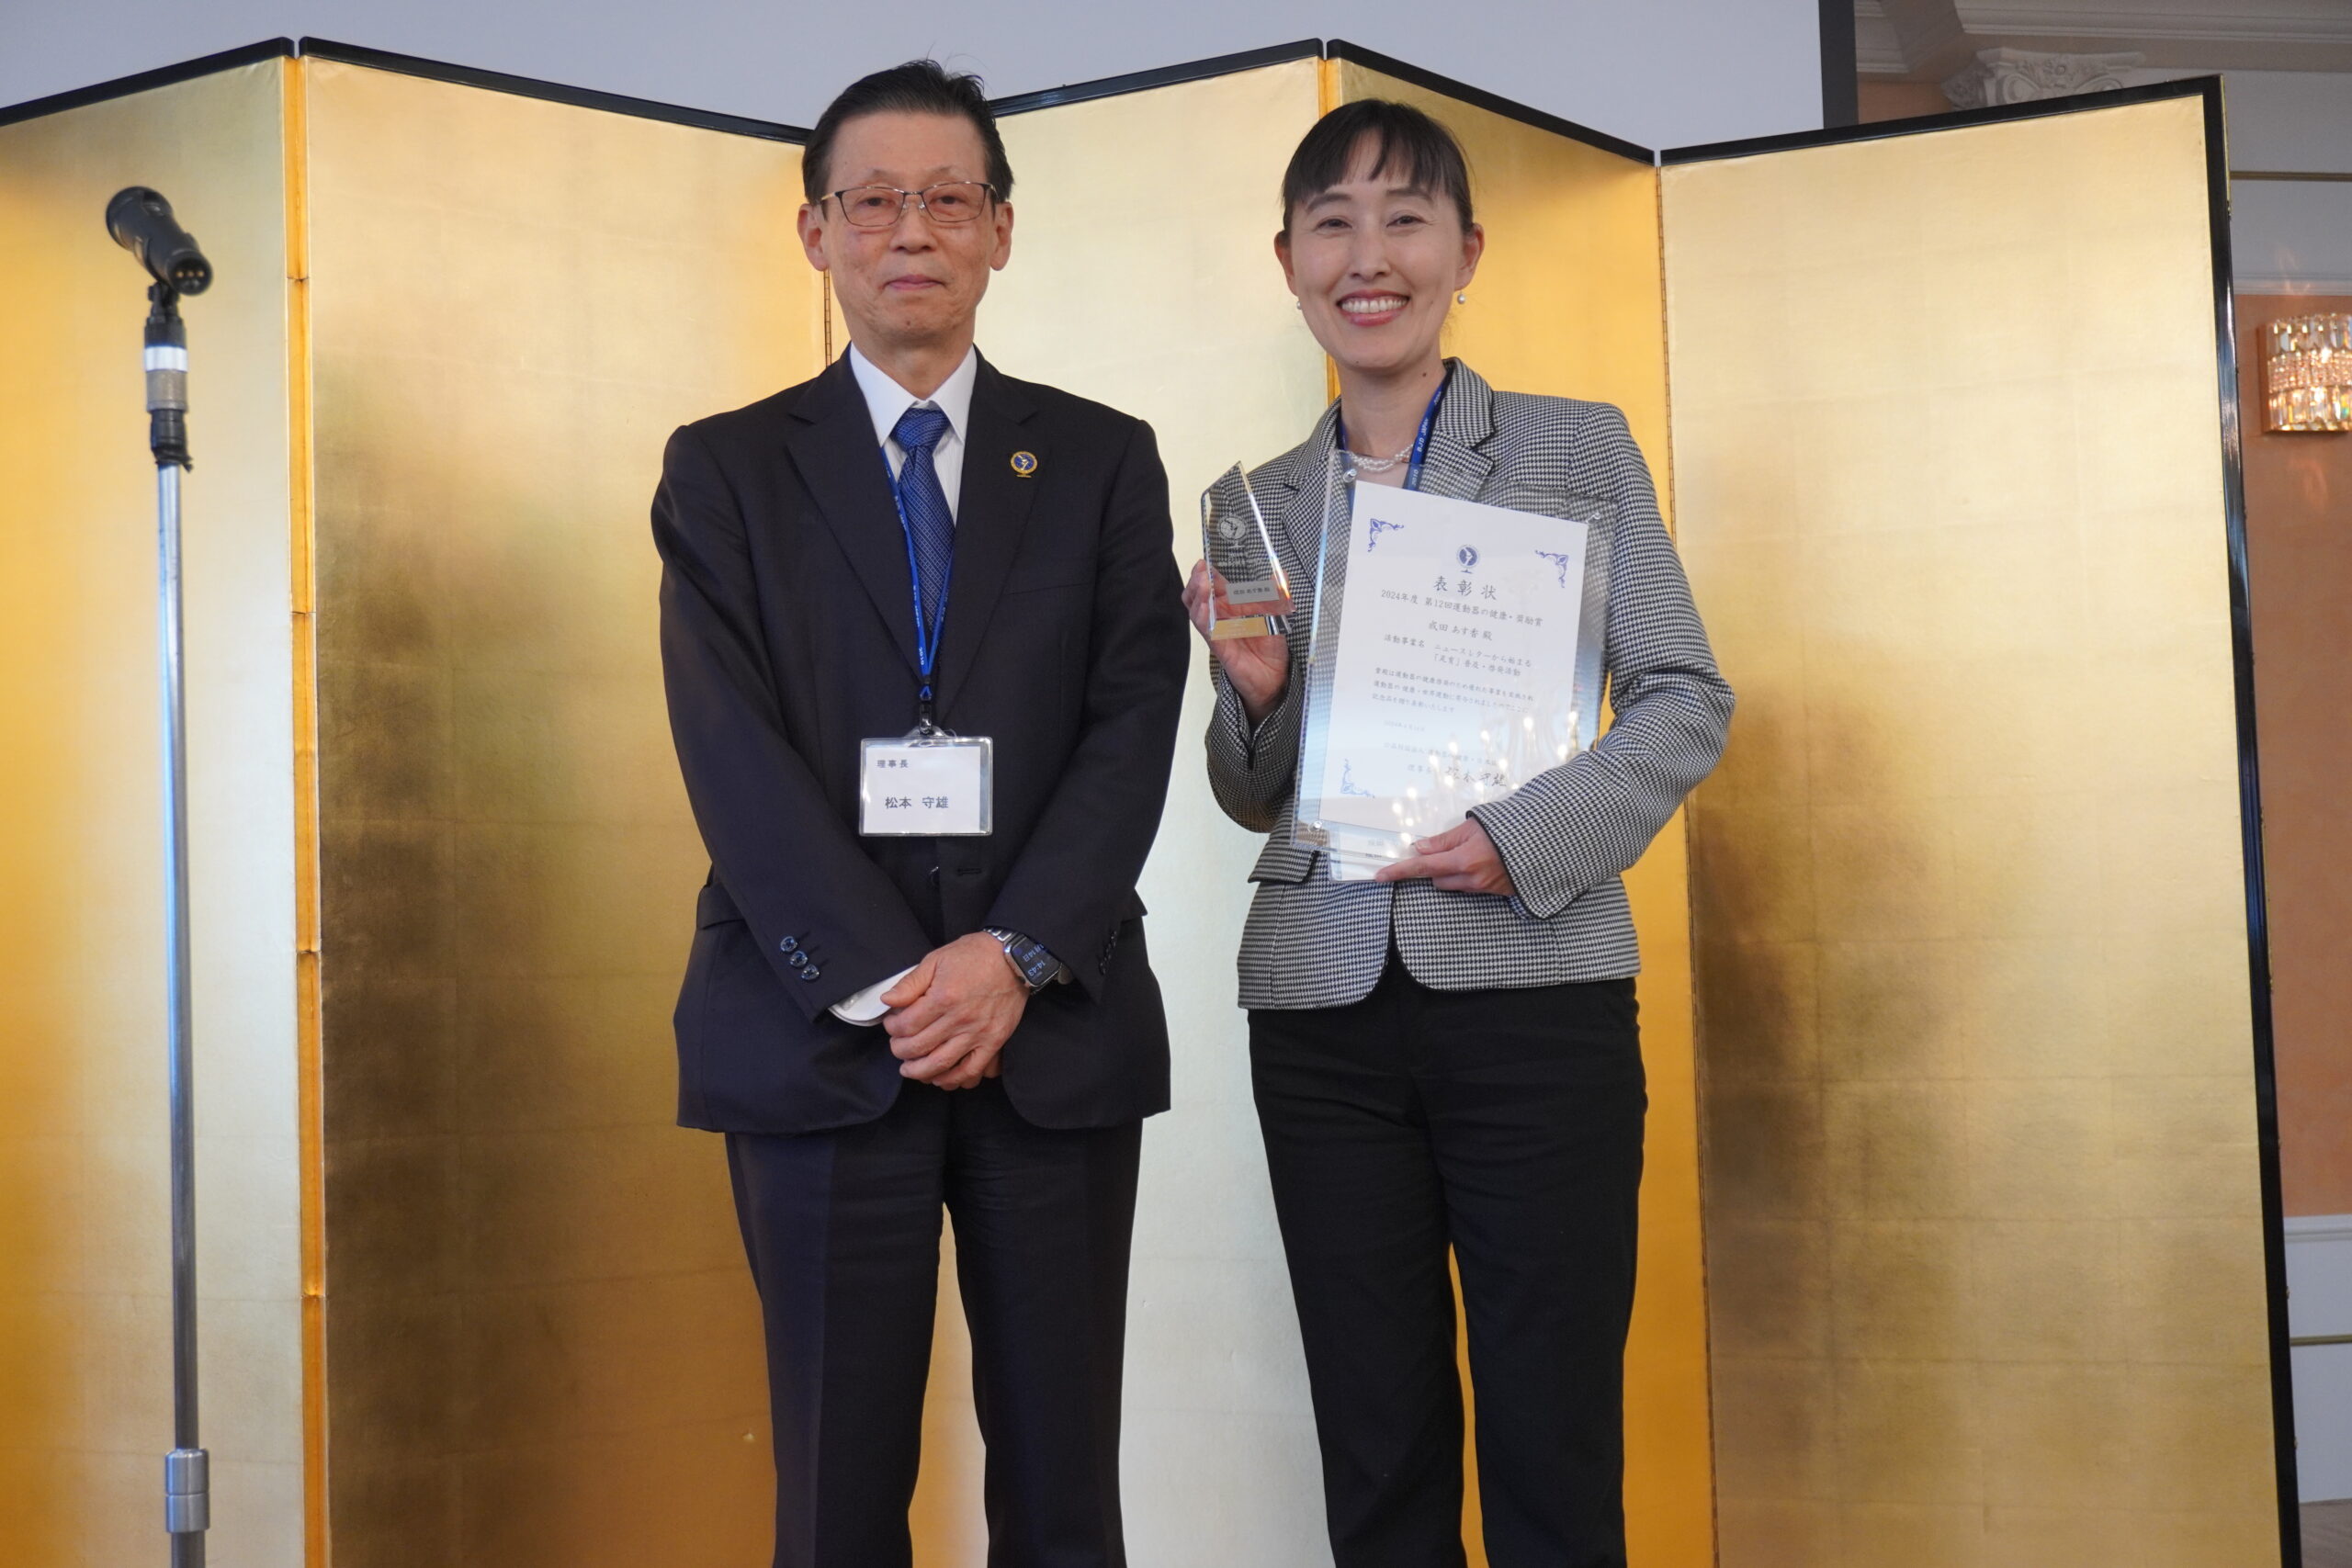 運動器の健康・日本協会の理事長である松本守雄様と、表彰状と盾を手に笑顔の成田